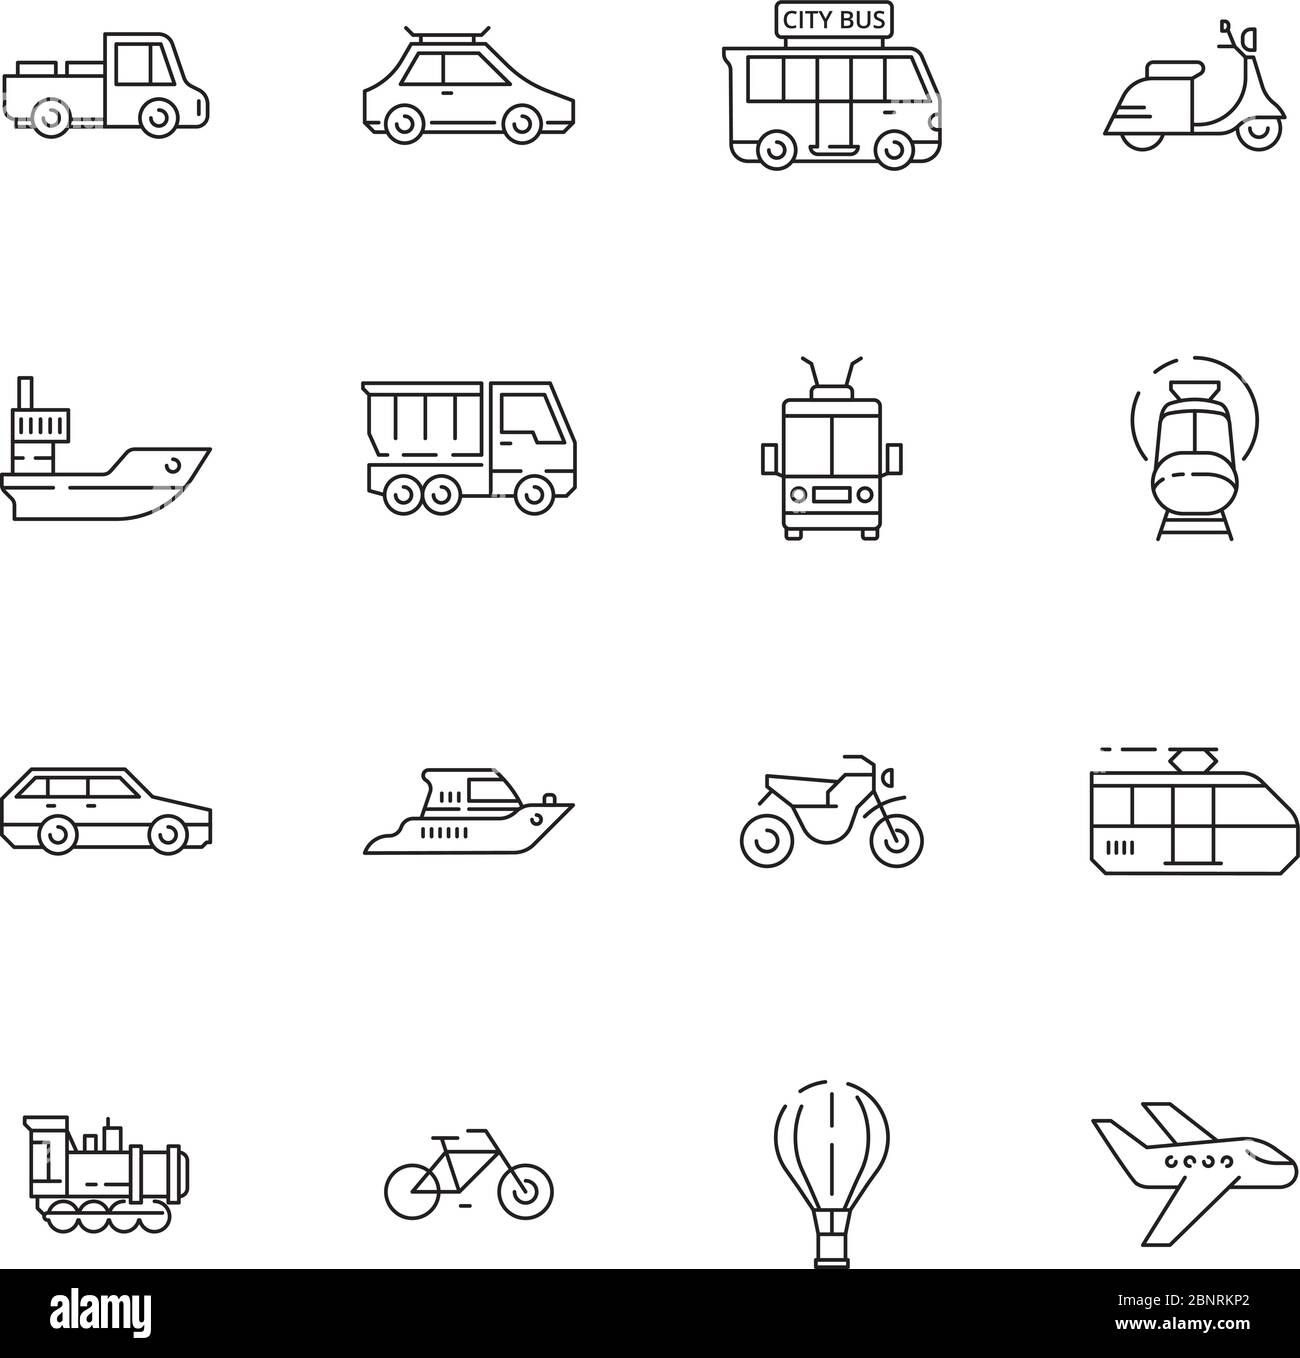 Iconos de transporte público. Coches aviones trenes barcos vehículos urbanos línea fina colección símbolos Ilustración del Vector